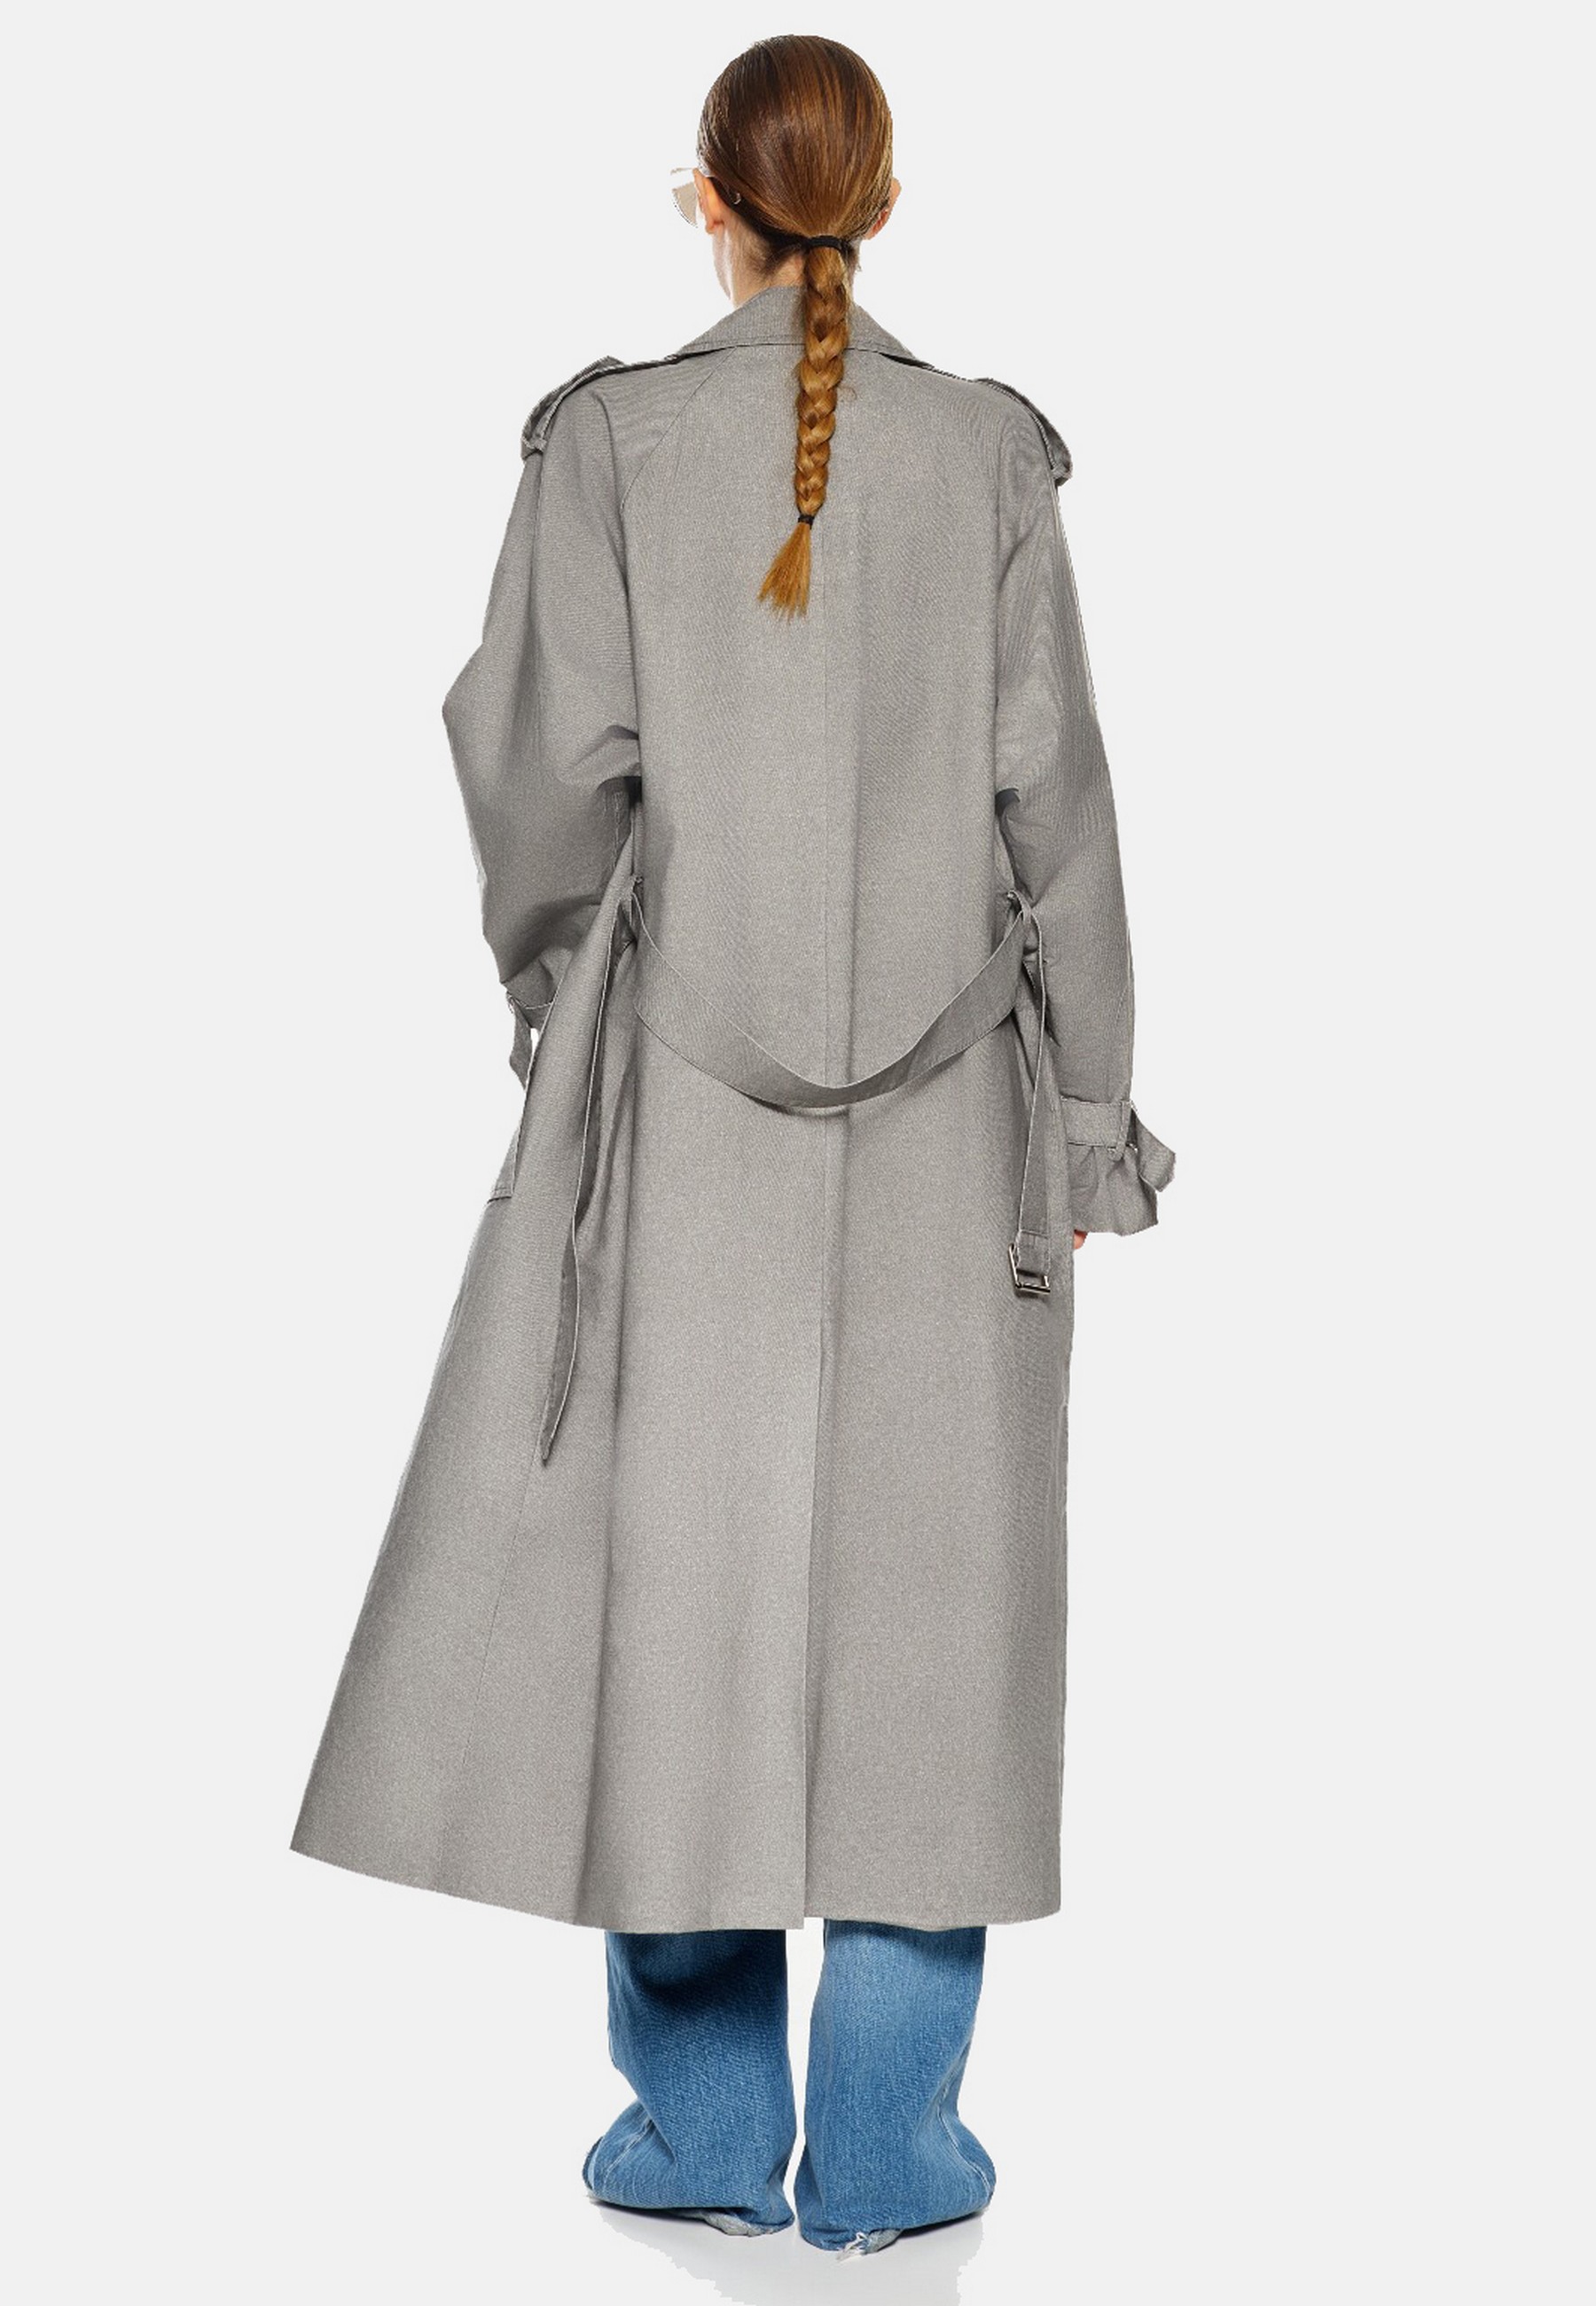 Damen Textil Mantel Clarissa in Grau von Ricano - Rückansicht am Model